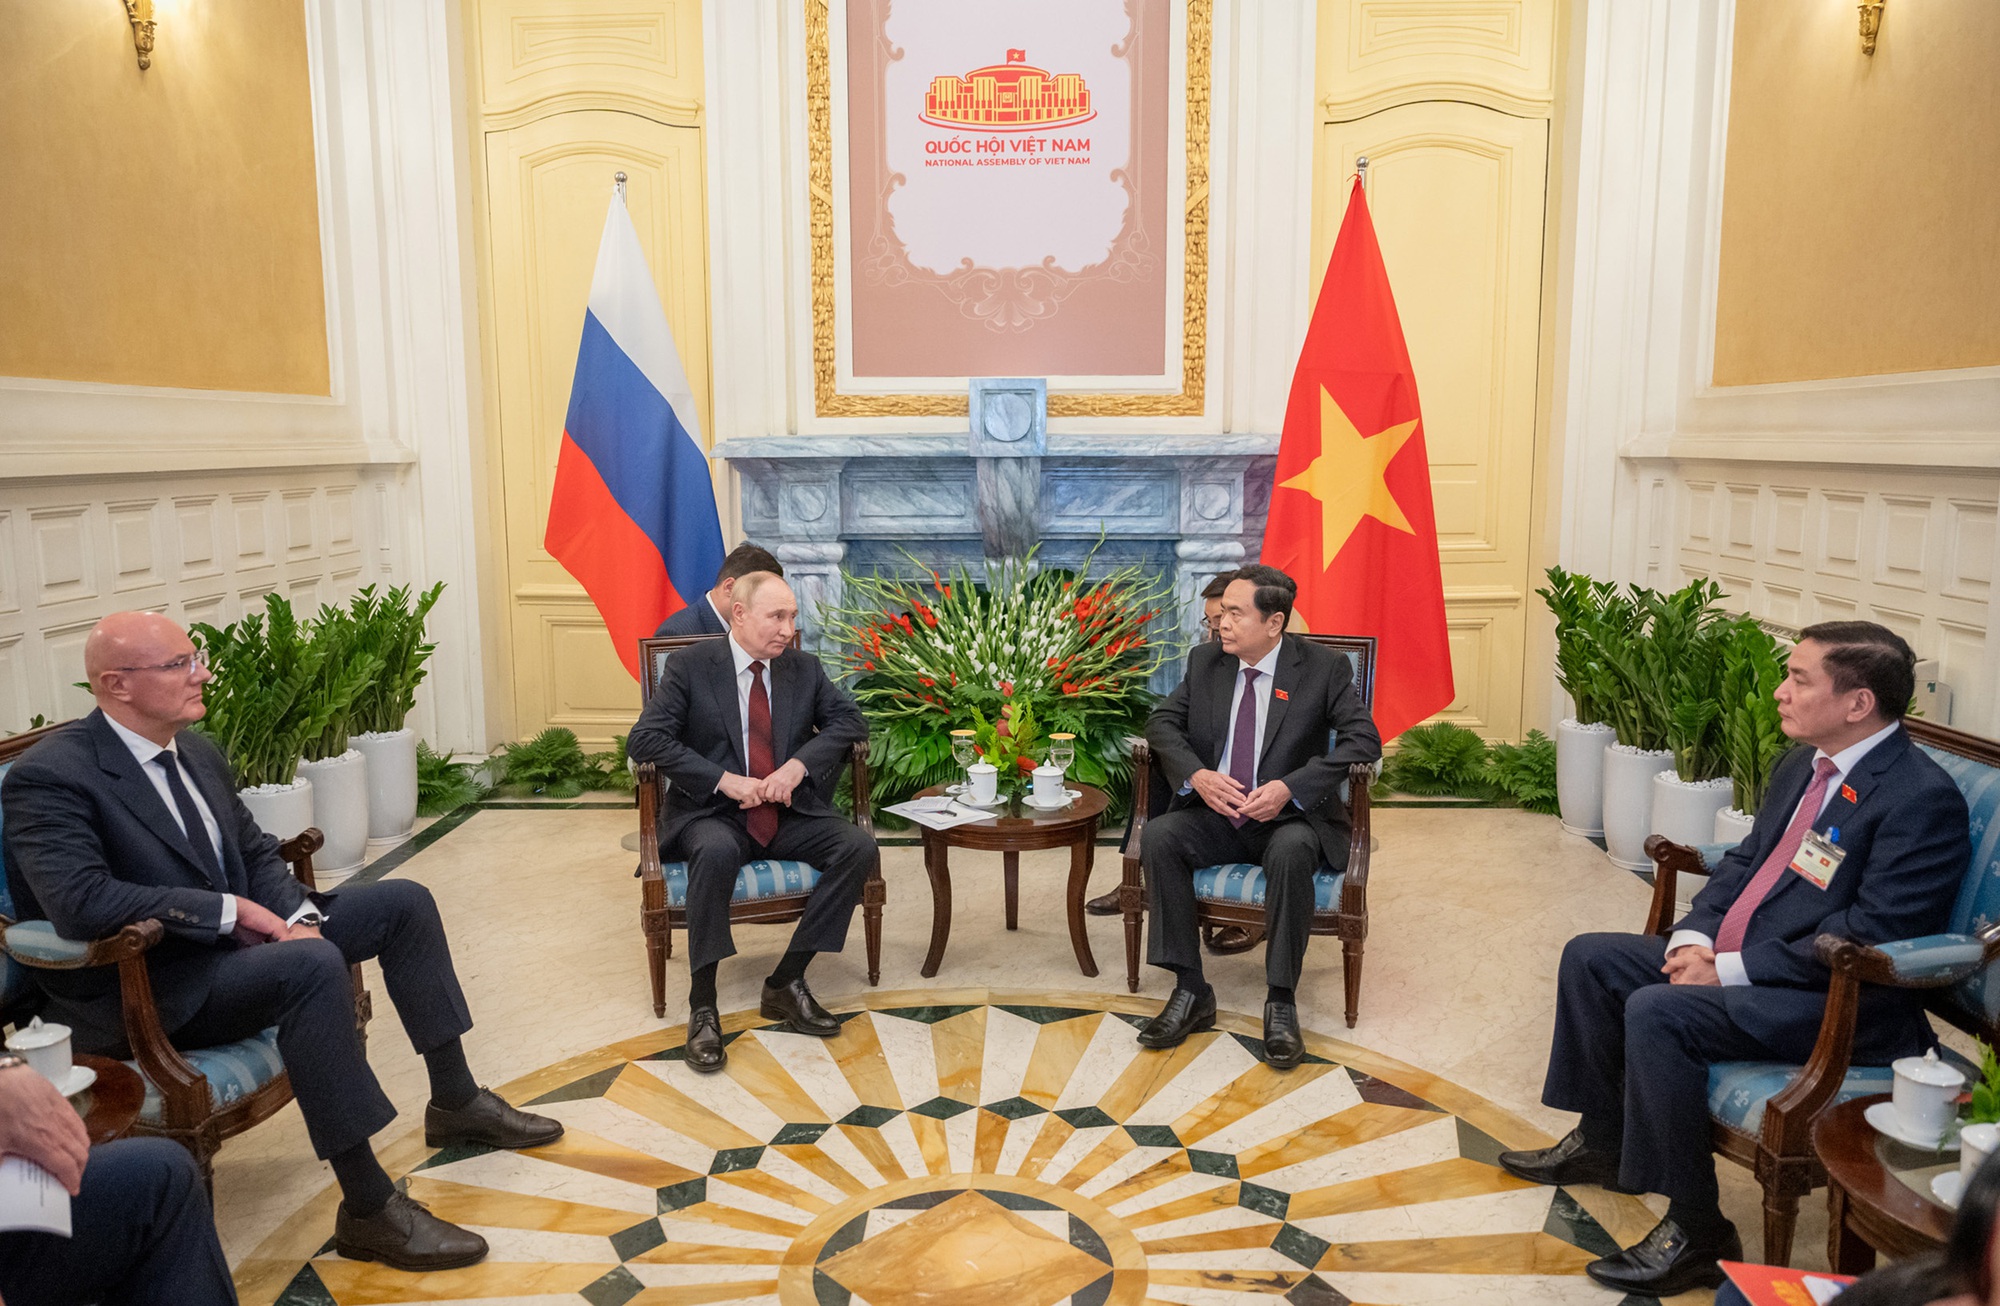 Chủ tịch Quốc hội Trần Thanh Mẫn hội kiến Tổng thống Putin tại nơi đặc biệt- Ảnh 2.